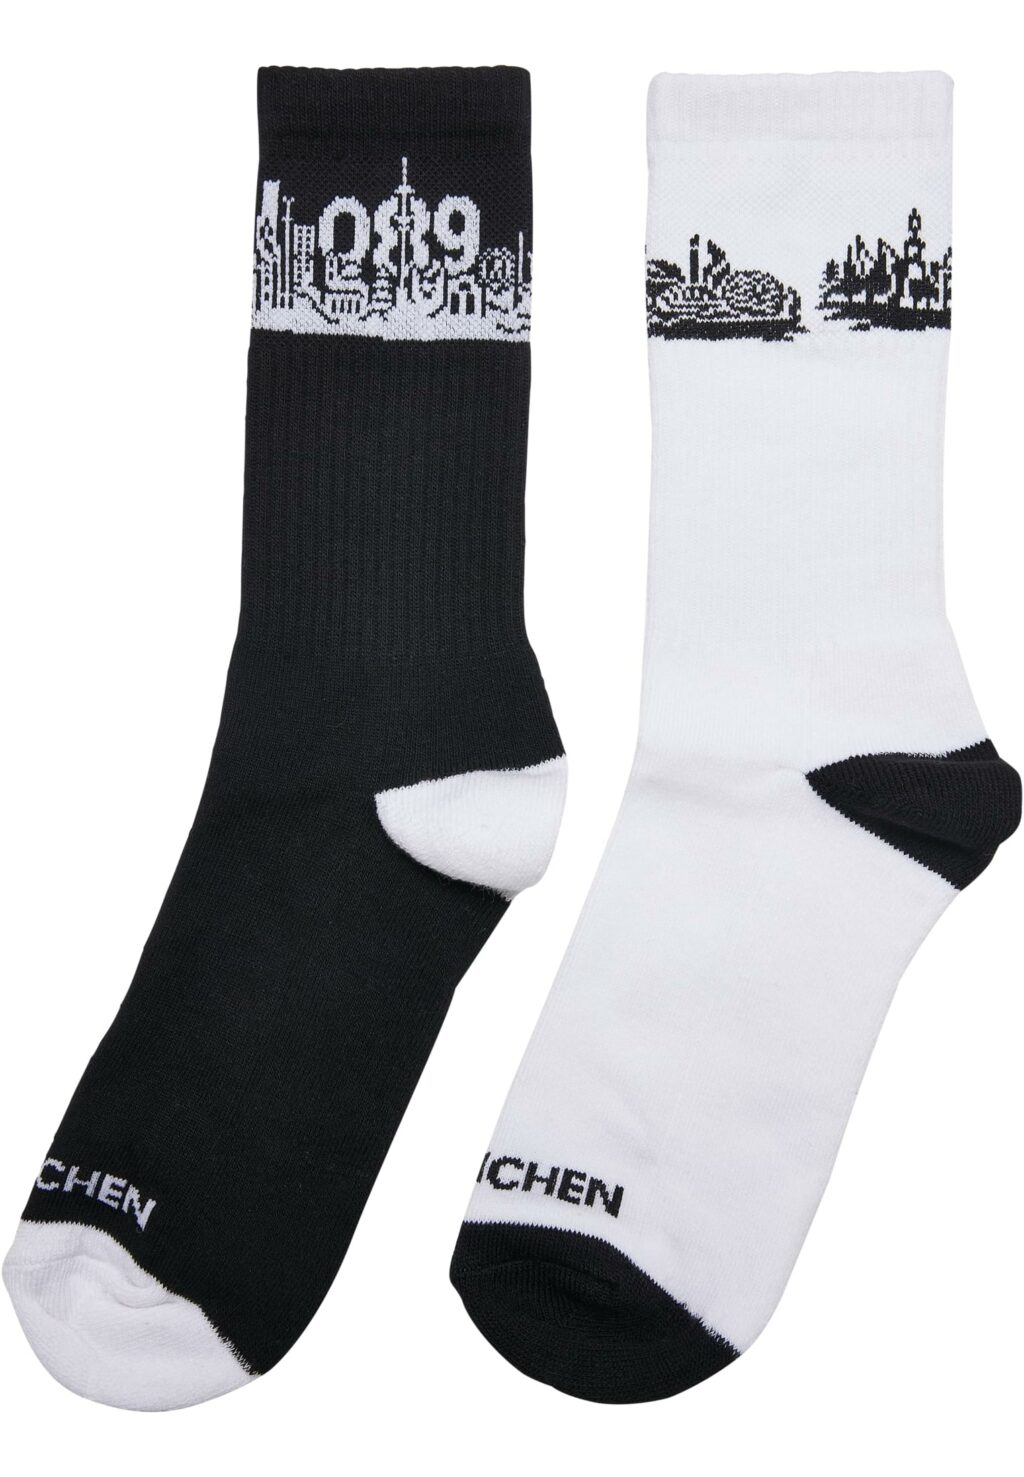 Major City 089 Socks 2-Pack black/white MT2314